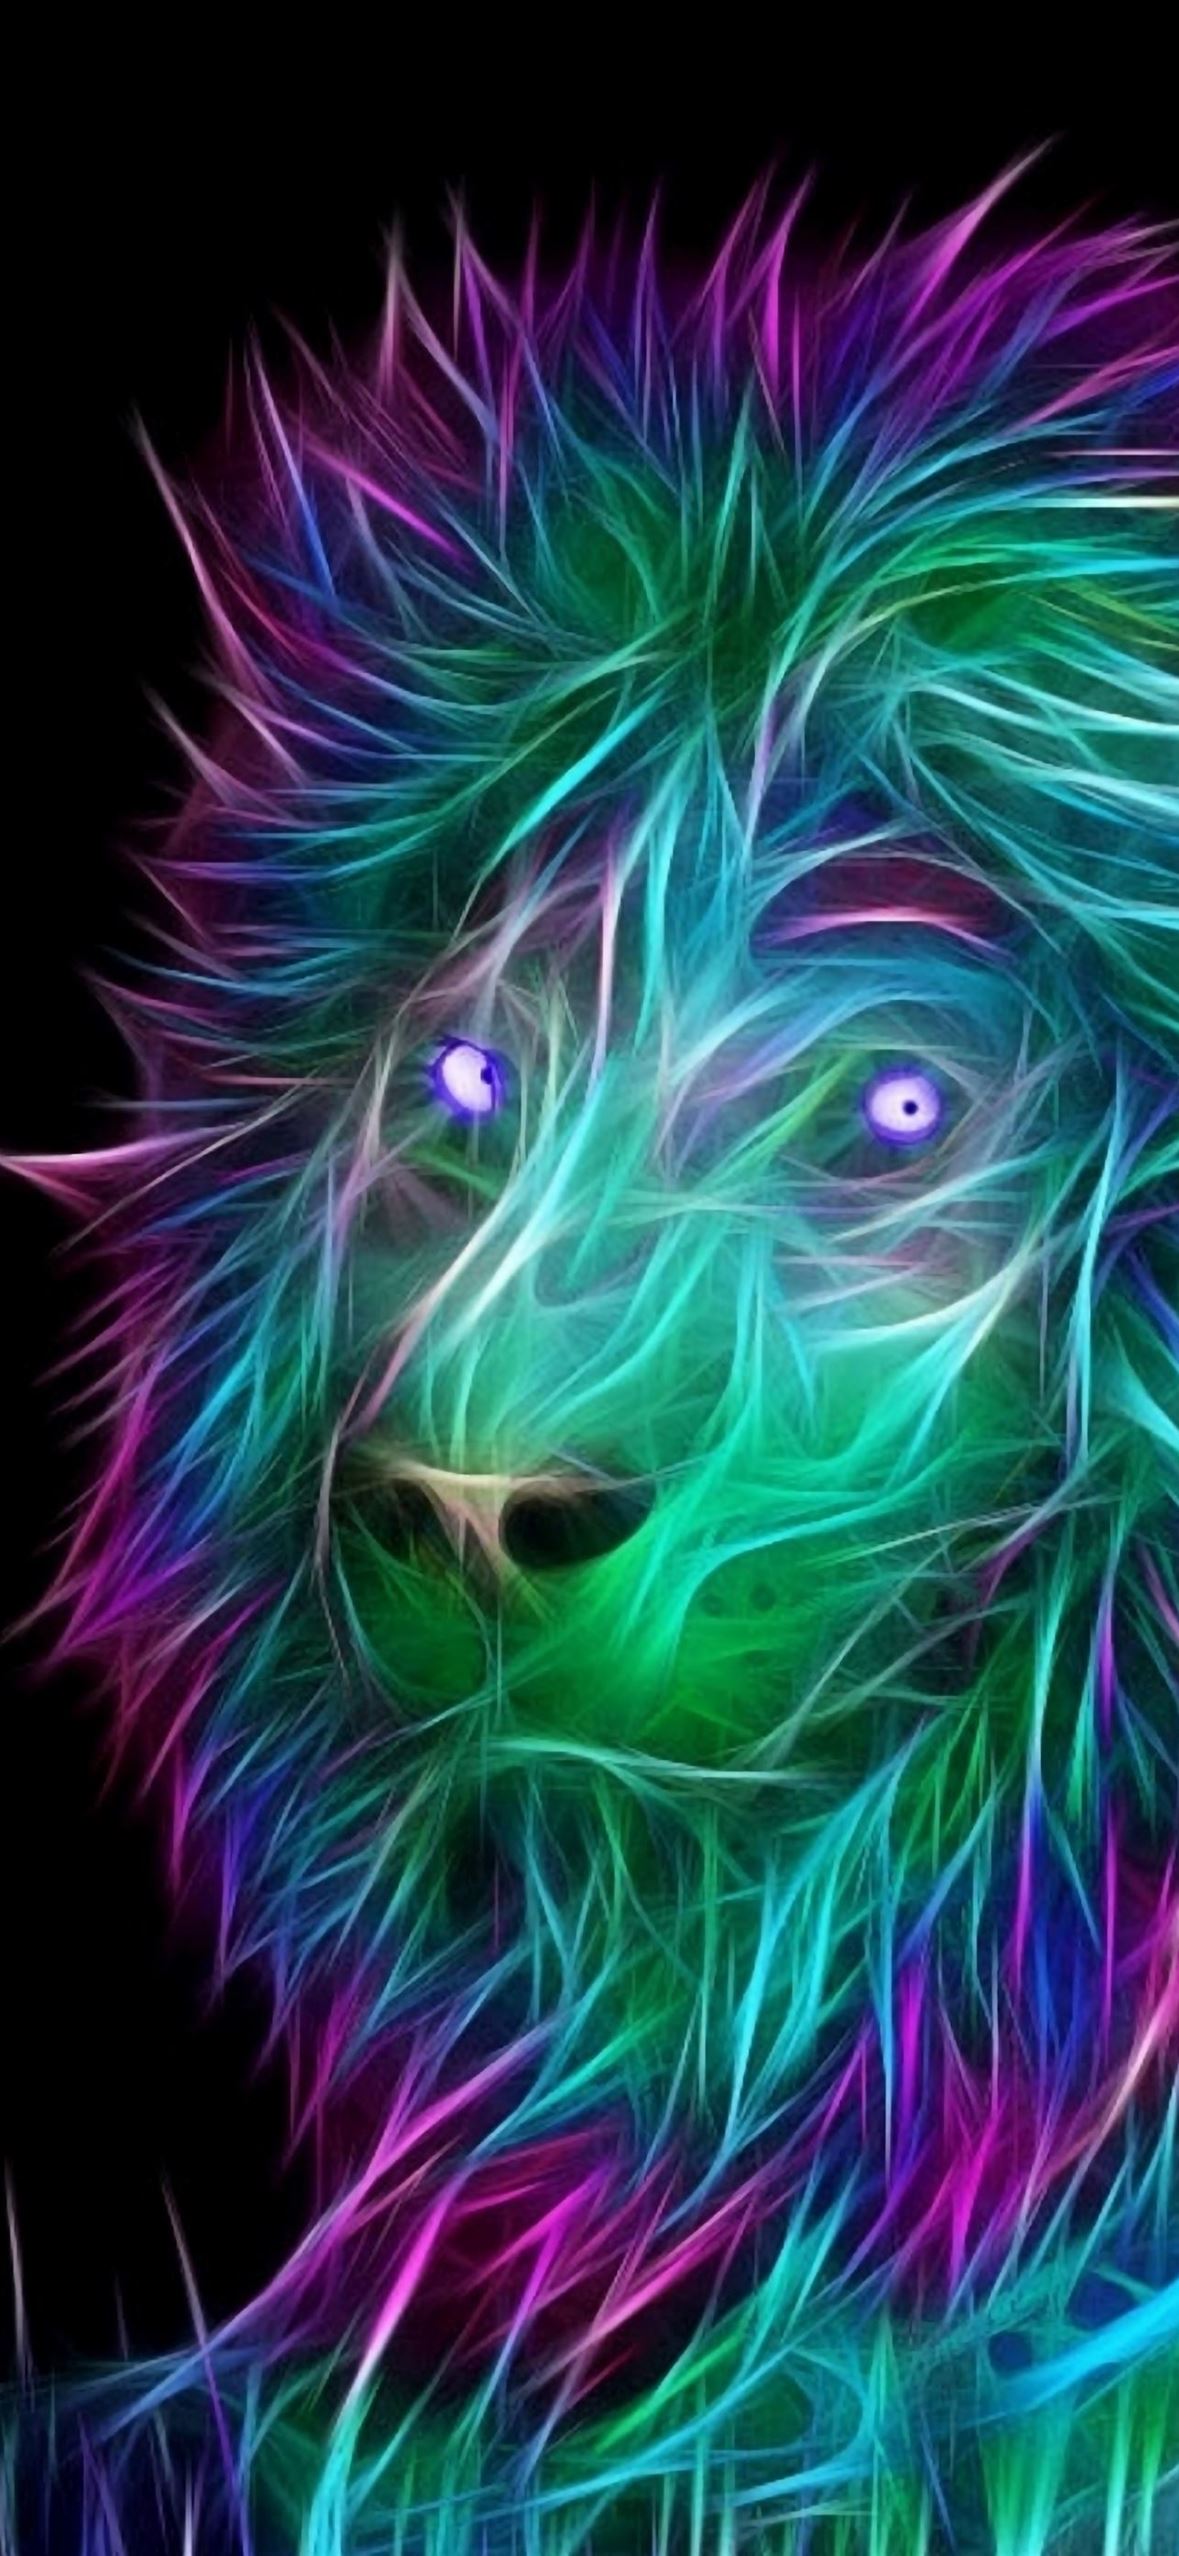 Hình nền iPhone sư tử 3D màu sắc đầy màu sắc sẽ khiến bạn đắm chìm trong vẻ đẹp hoang dã và uy nghi của chú sư tử. Với công nghệ 3D độc đáo, màu sắc sống động, hình nền sư tử sẽ khiến cho chiếc iPhone của bạn trở thành đại diện cho sự mạnh mẽ và quyết đoán. 